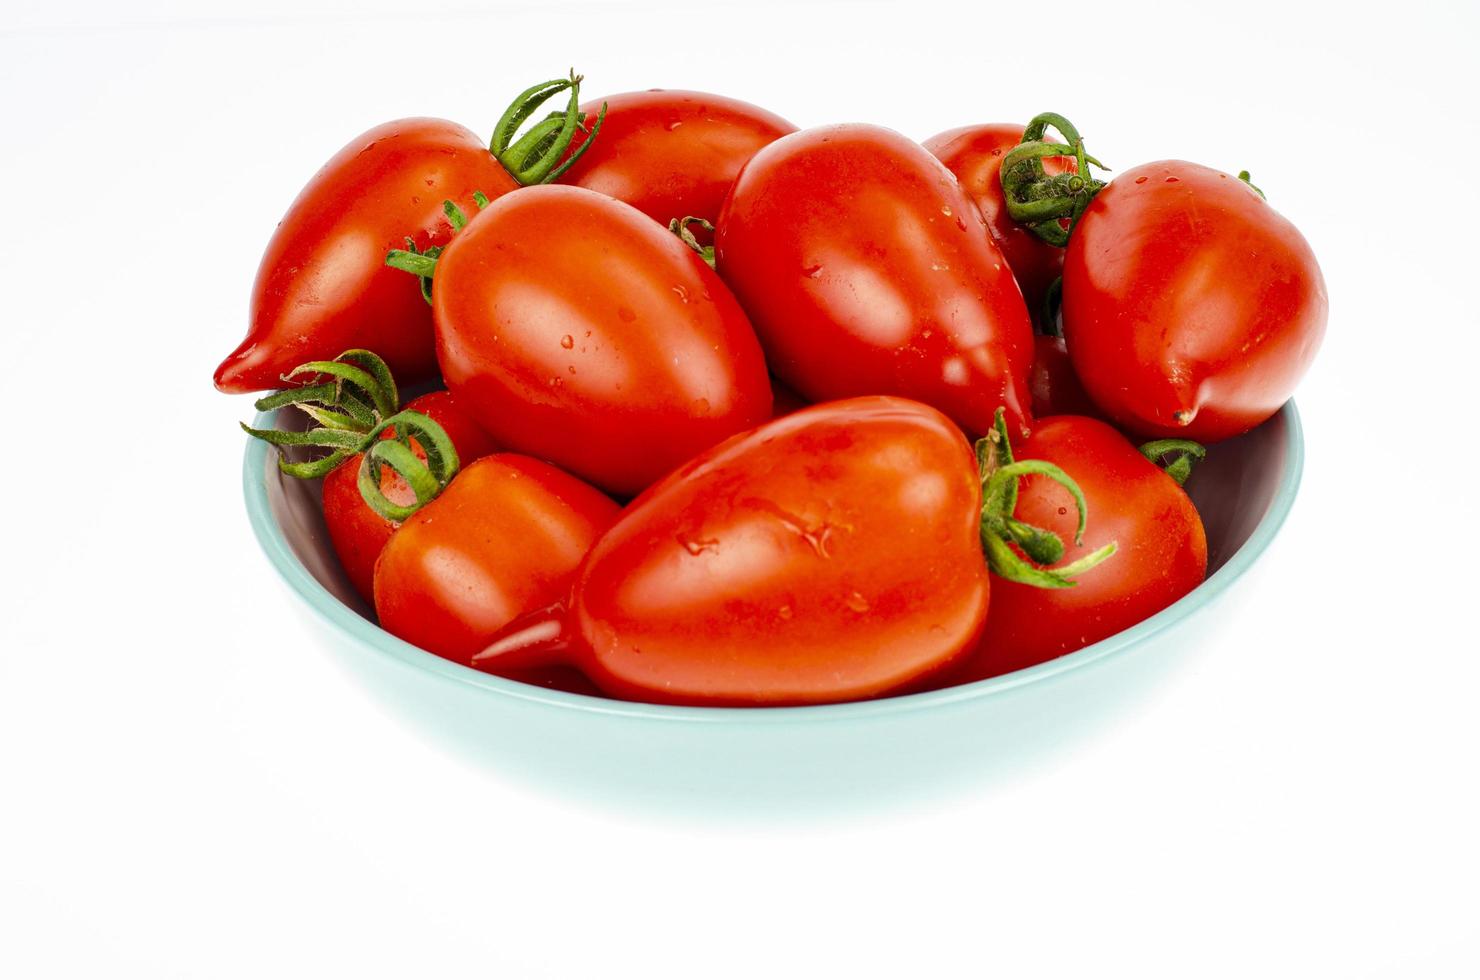 los tomates rojos maduros ovalados. foto de estudio.